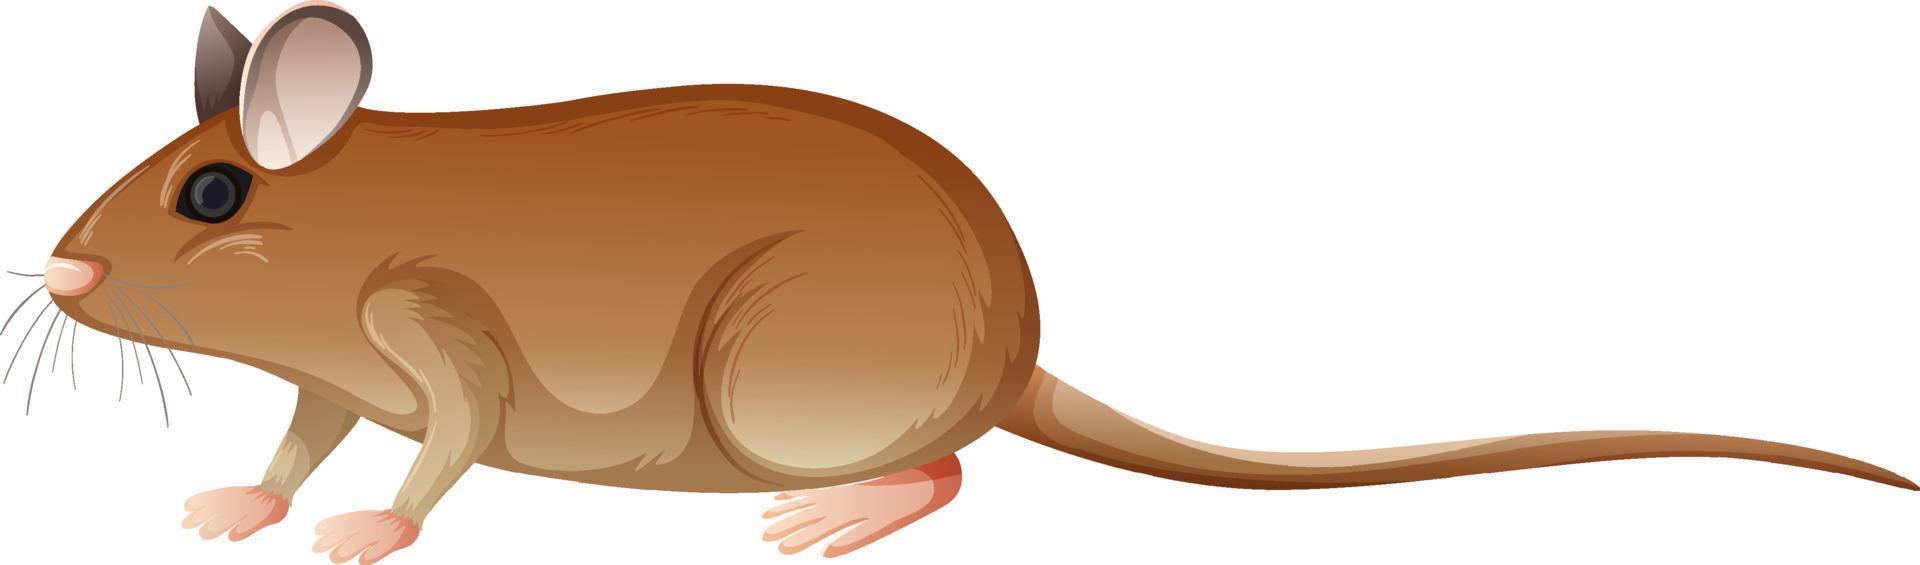 rato gafanhoto em estilo cartoon, isolado no fundo branco vetor